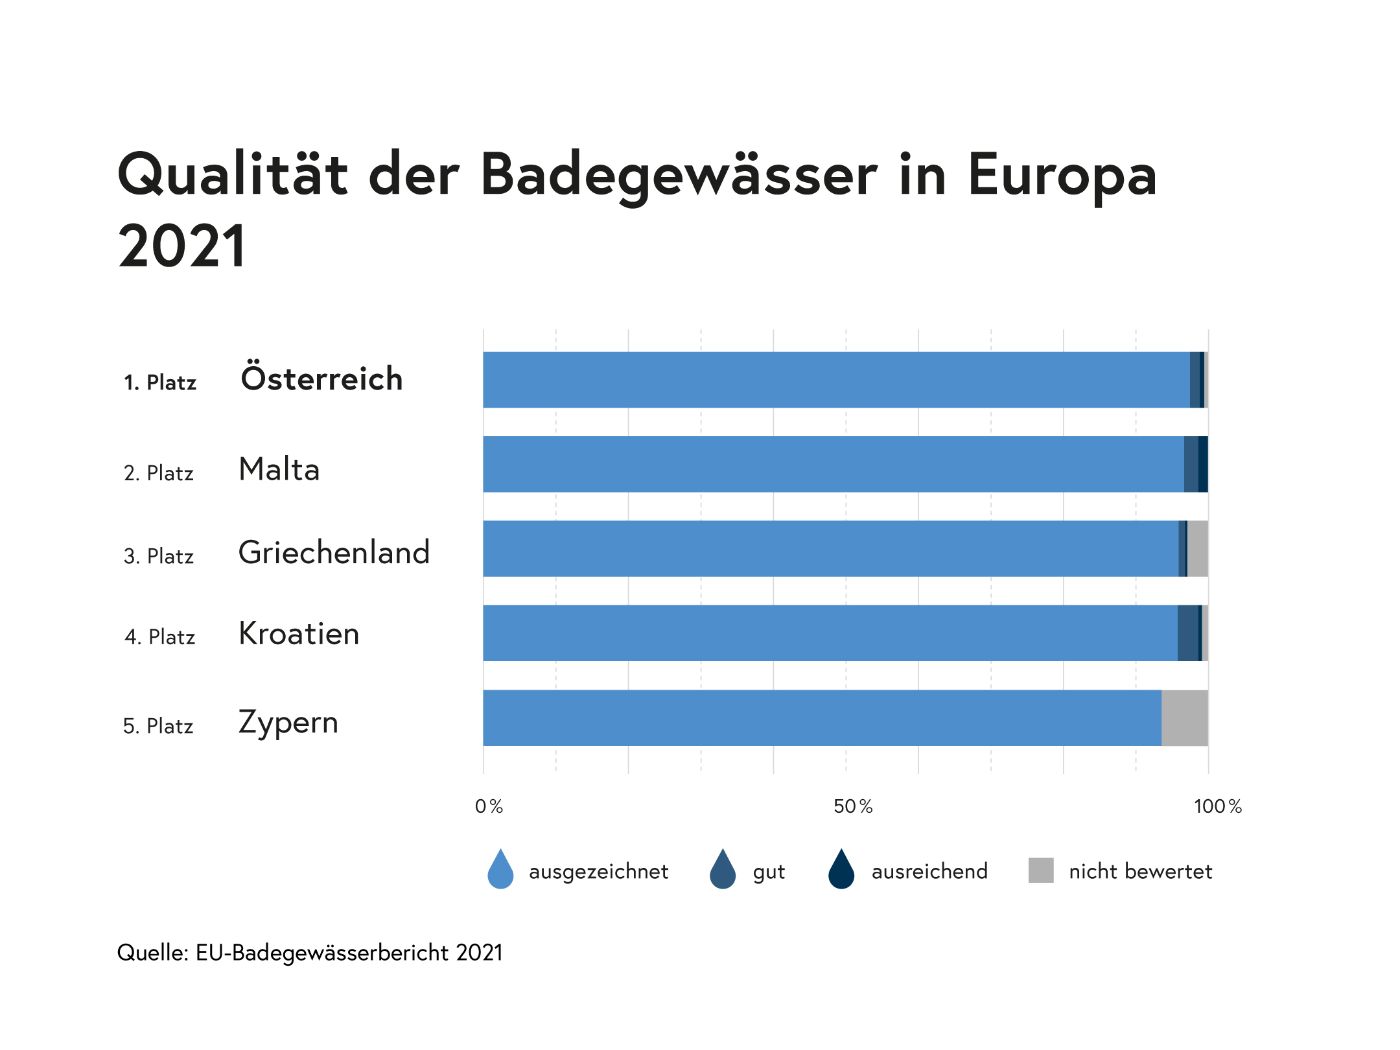 Infografik: Qualität der Badegewässer in Europa 2021: Platz 1 Österreich: 97,7 % ausgezeichnet, Platz 2: Malta: 96,6% ausgezeichnet, 3. Platz Griechenland: 95,8% ausgezeichnet, 4. Platz Kroatien: 95,7% ausgezeichnet, 5. Platz Zypern: 93,3% ausgezeichnet. Quelle: EU-Badegewässerbericht 2021